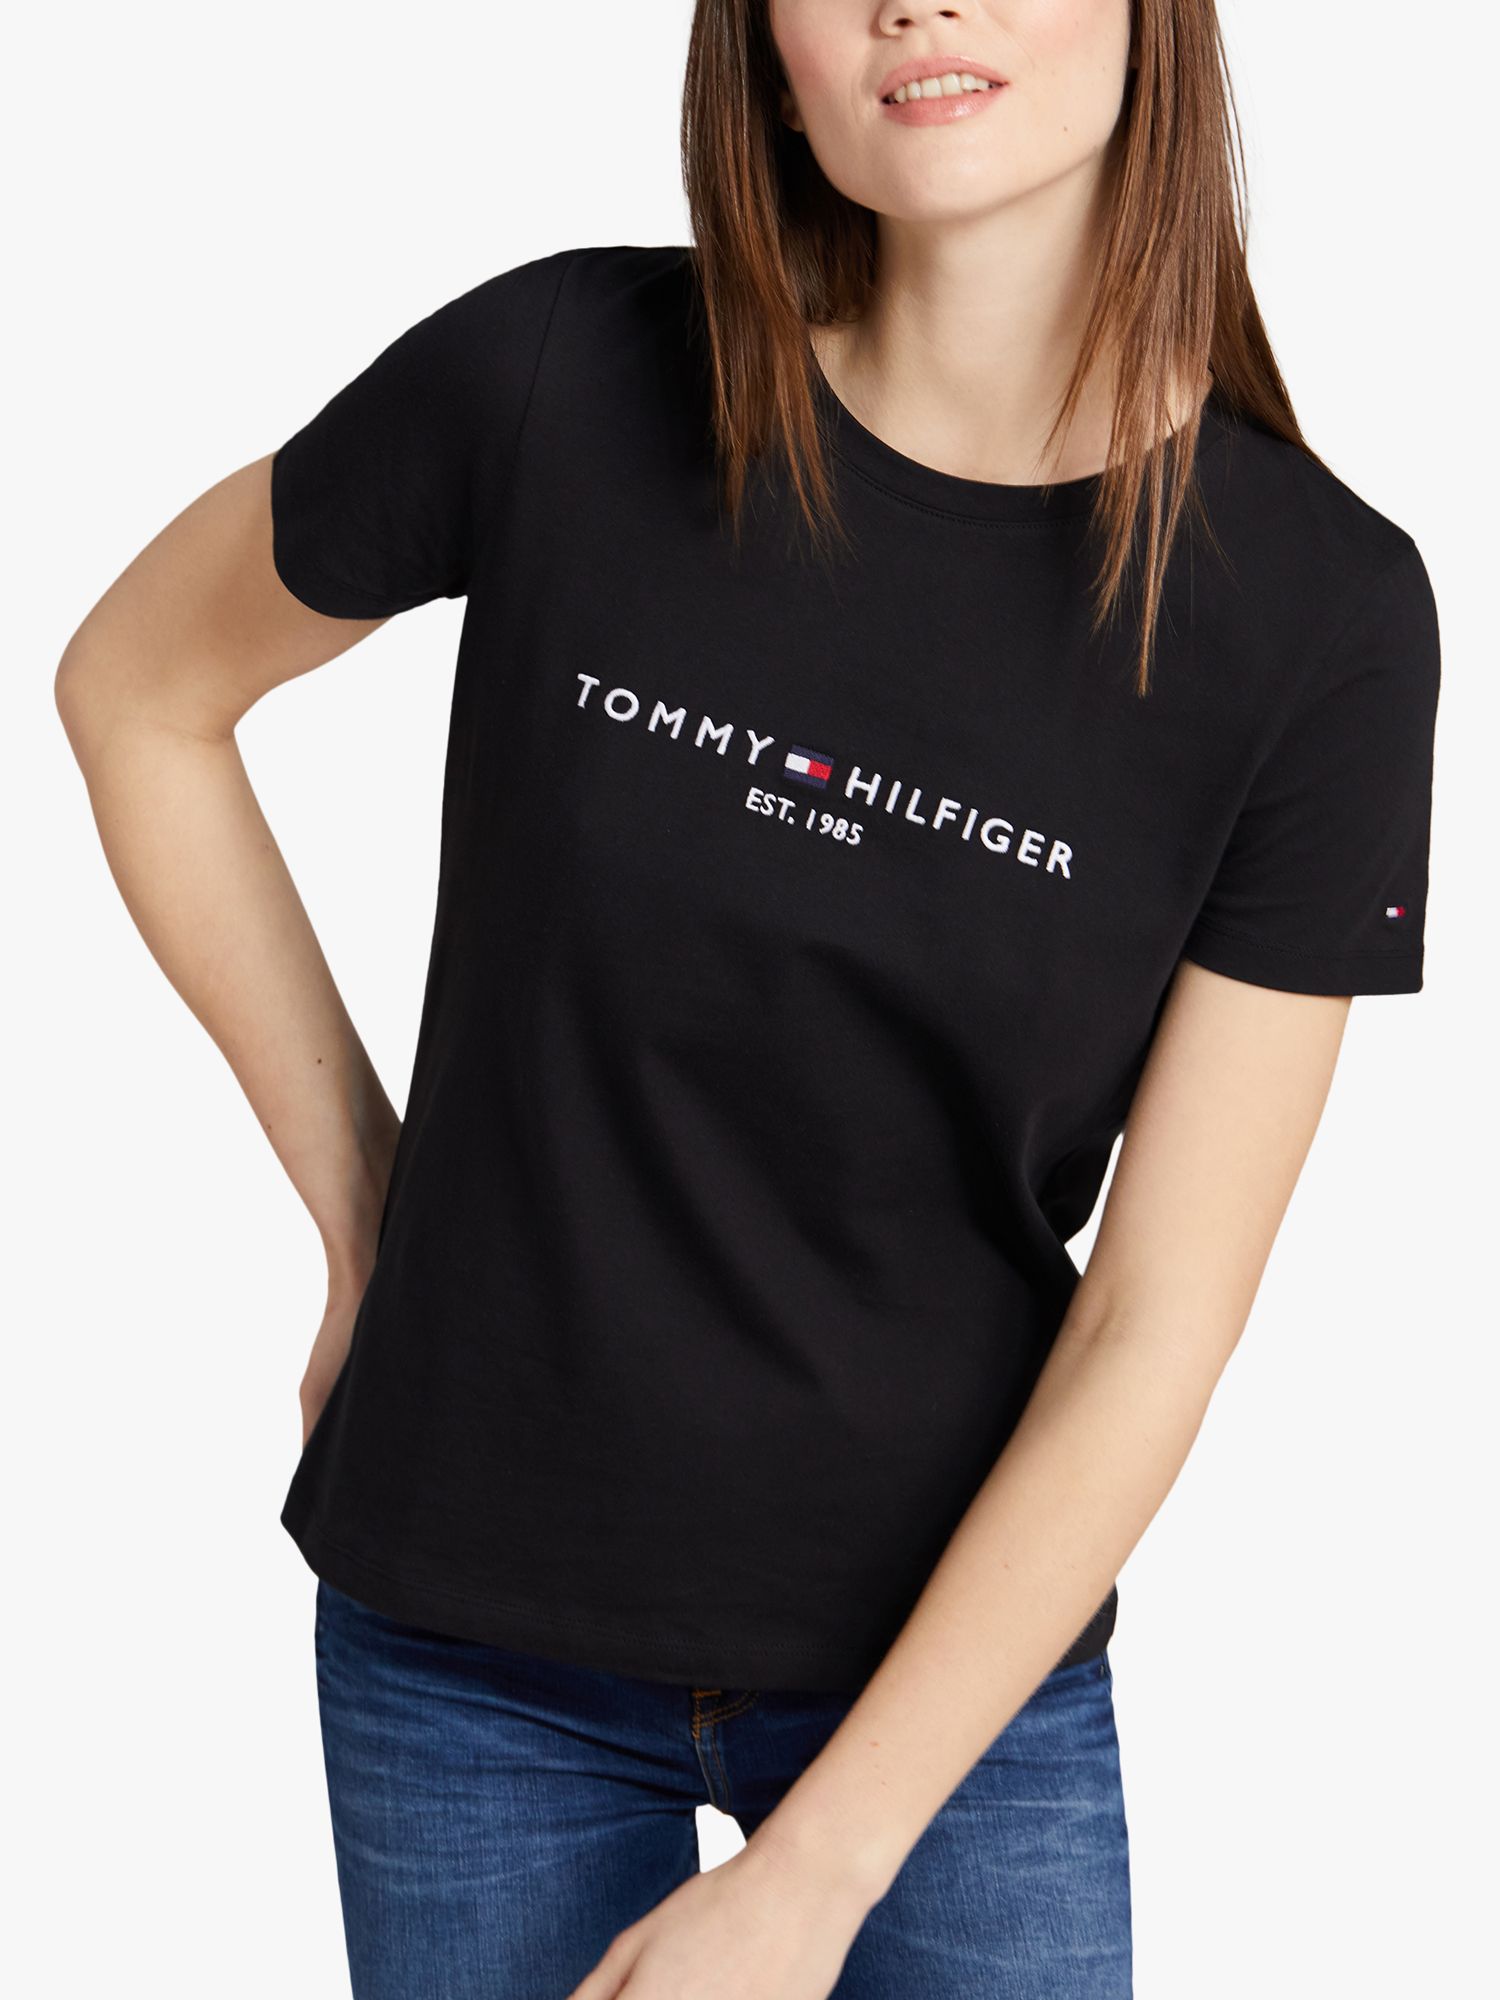 ORIGINAL Tommy Hilfiger Women's Big Logo Line T-Shirt - Branded